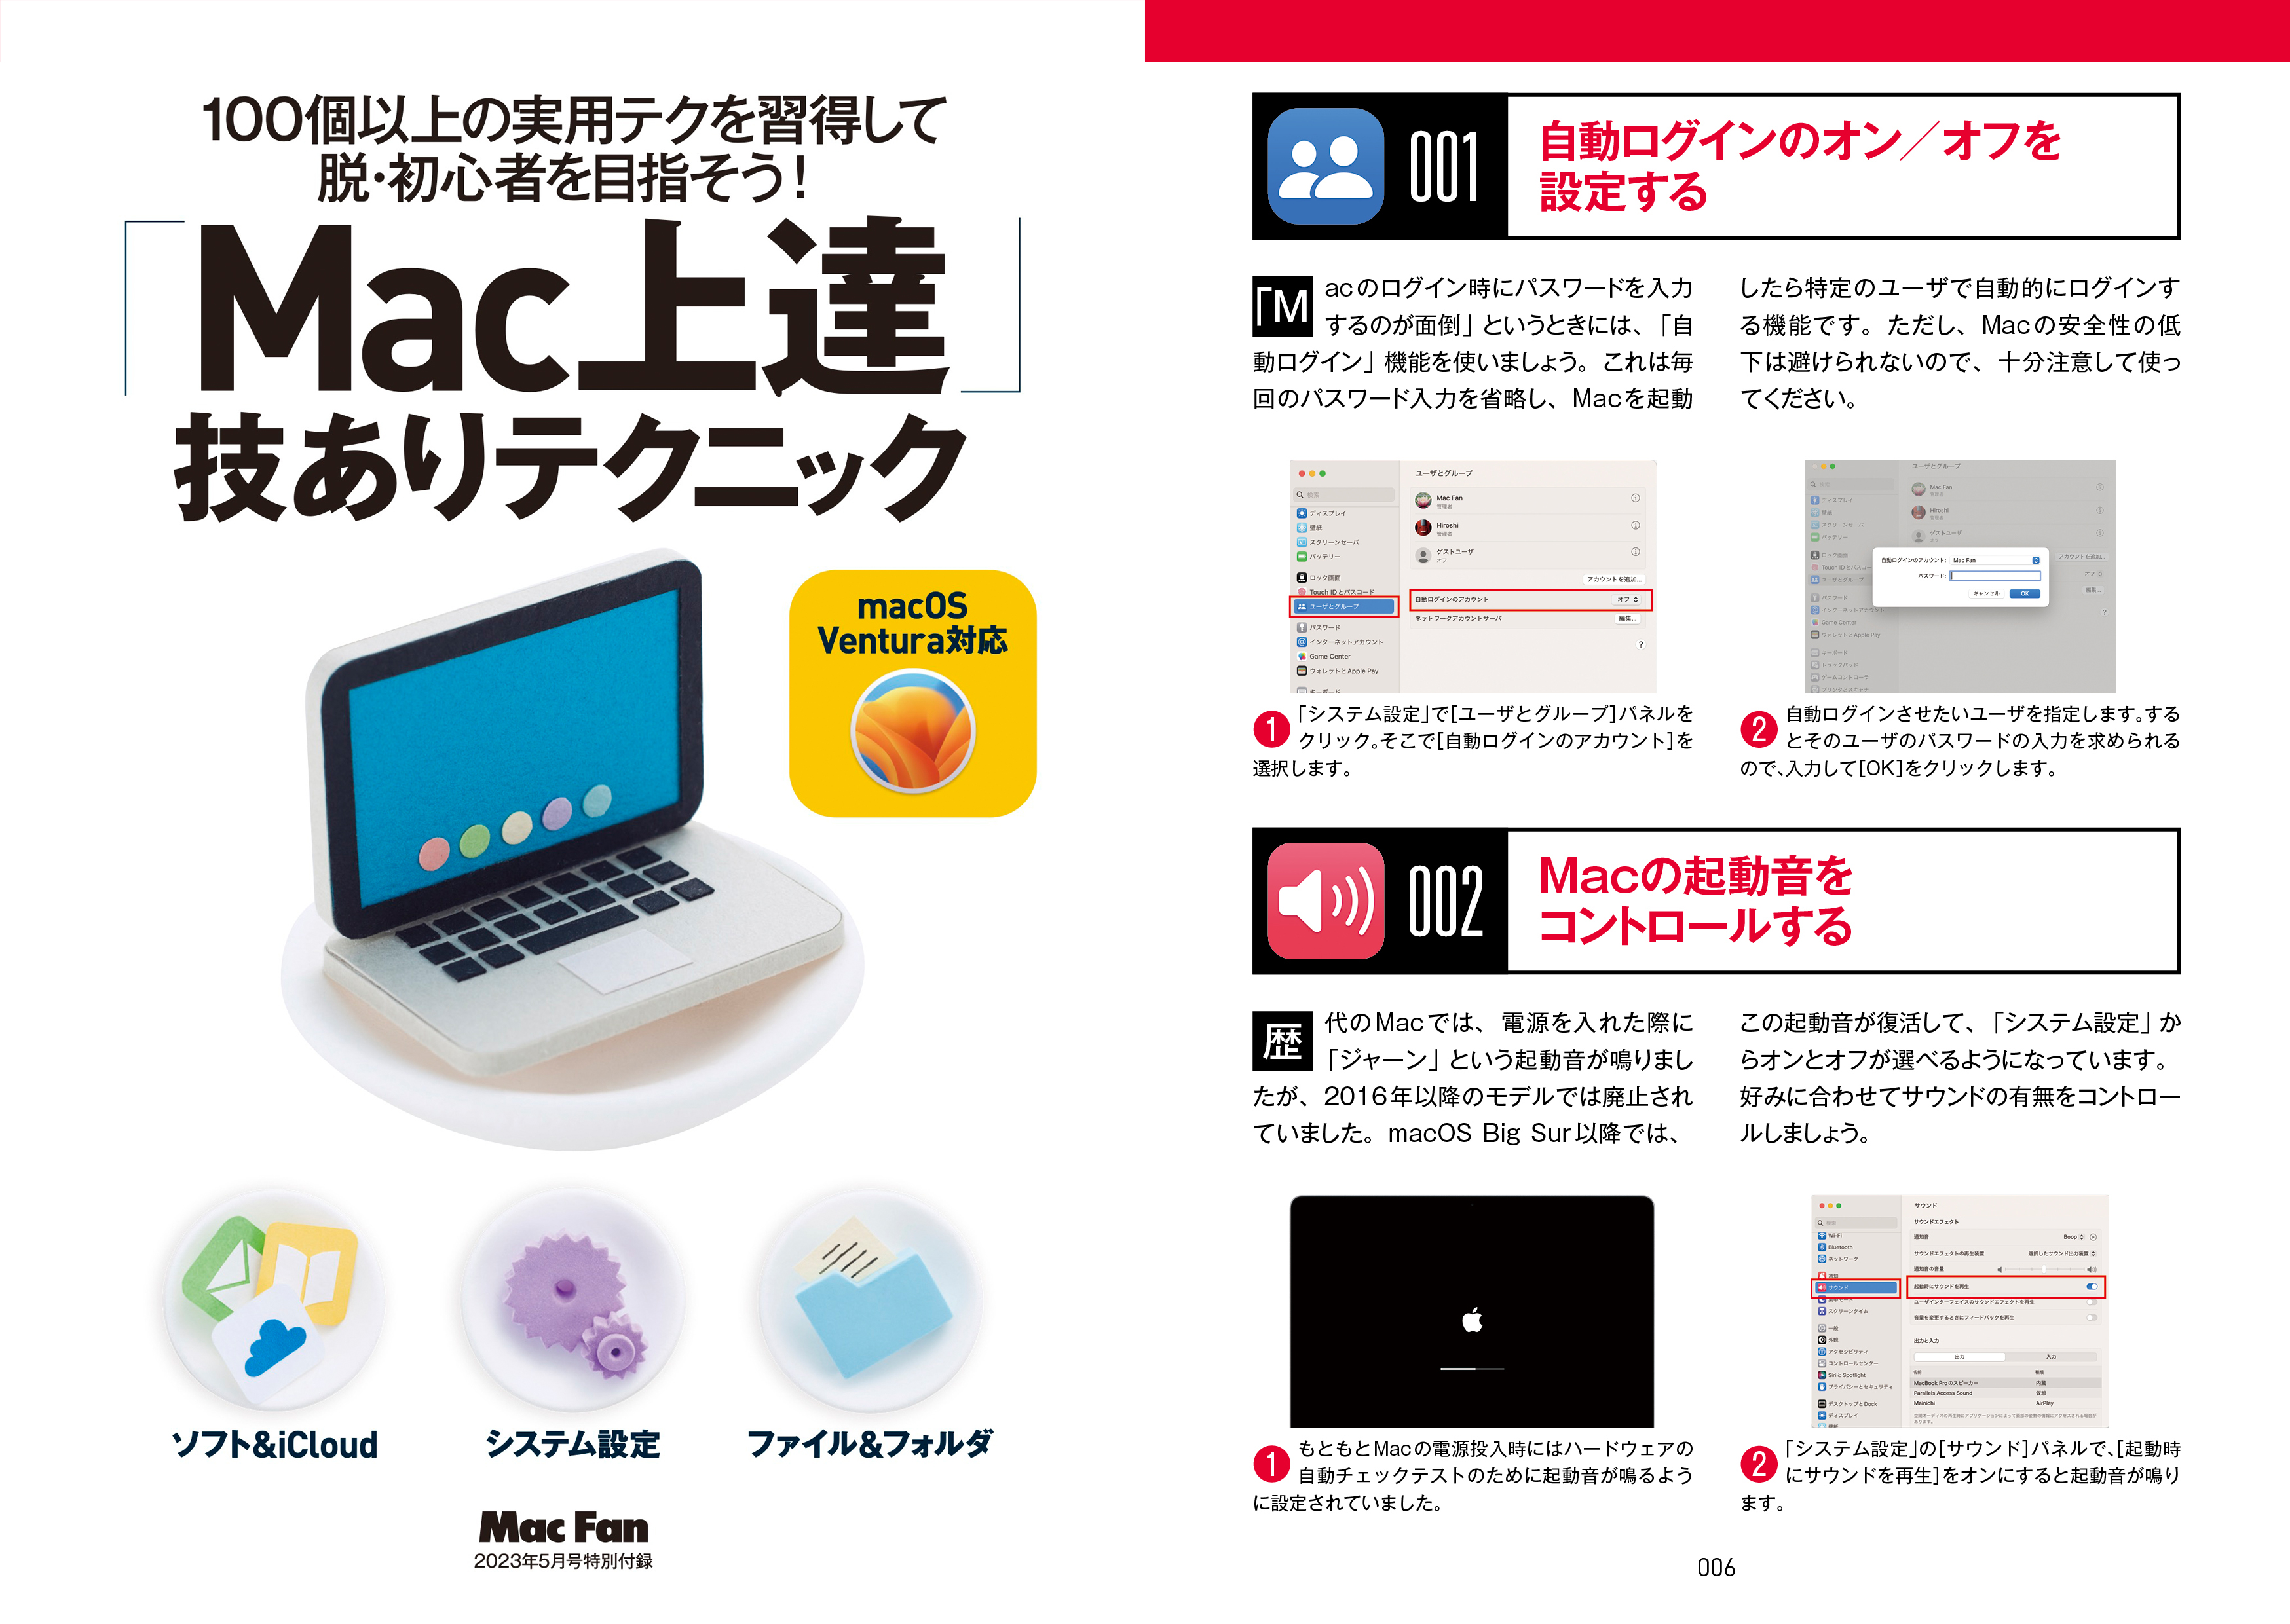 付録冊子「『Mac上達』技ありテクニック」